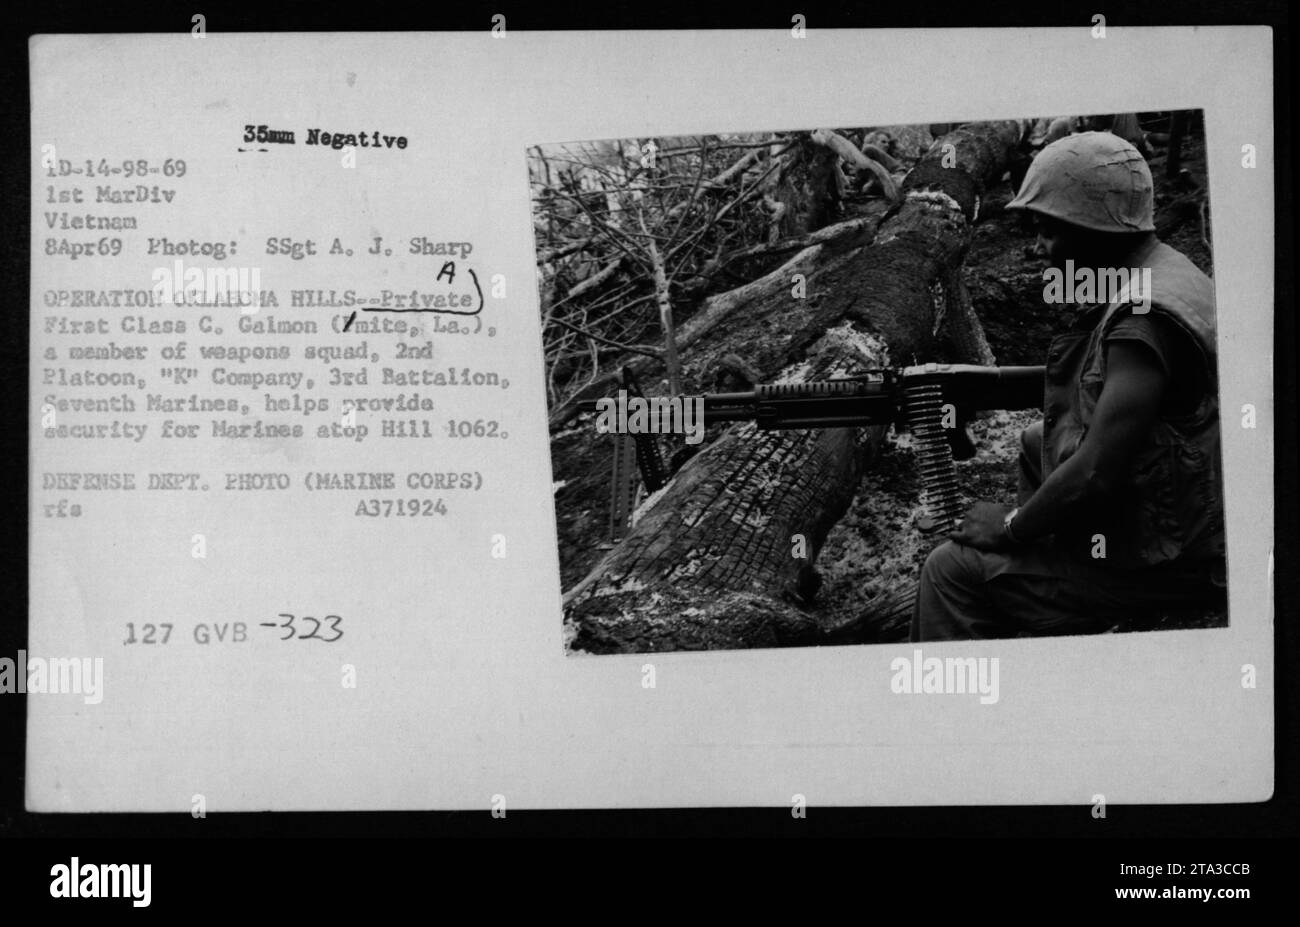 Le soldat de première classe C. Galmon, membre du 2e peloton de la compagnie 'K', du 3e bataillon du 7e Marines, aide à assurer la sécurité des Marines sur la colline 1062 lors de l'opération Oklahoma Hills le 8 avril 1969. Cette photographie a été prise par le SSgt A. J. Sharp et fait partie des archives du Département de la Défense. Banque D'Images